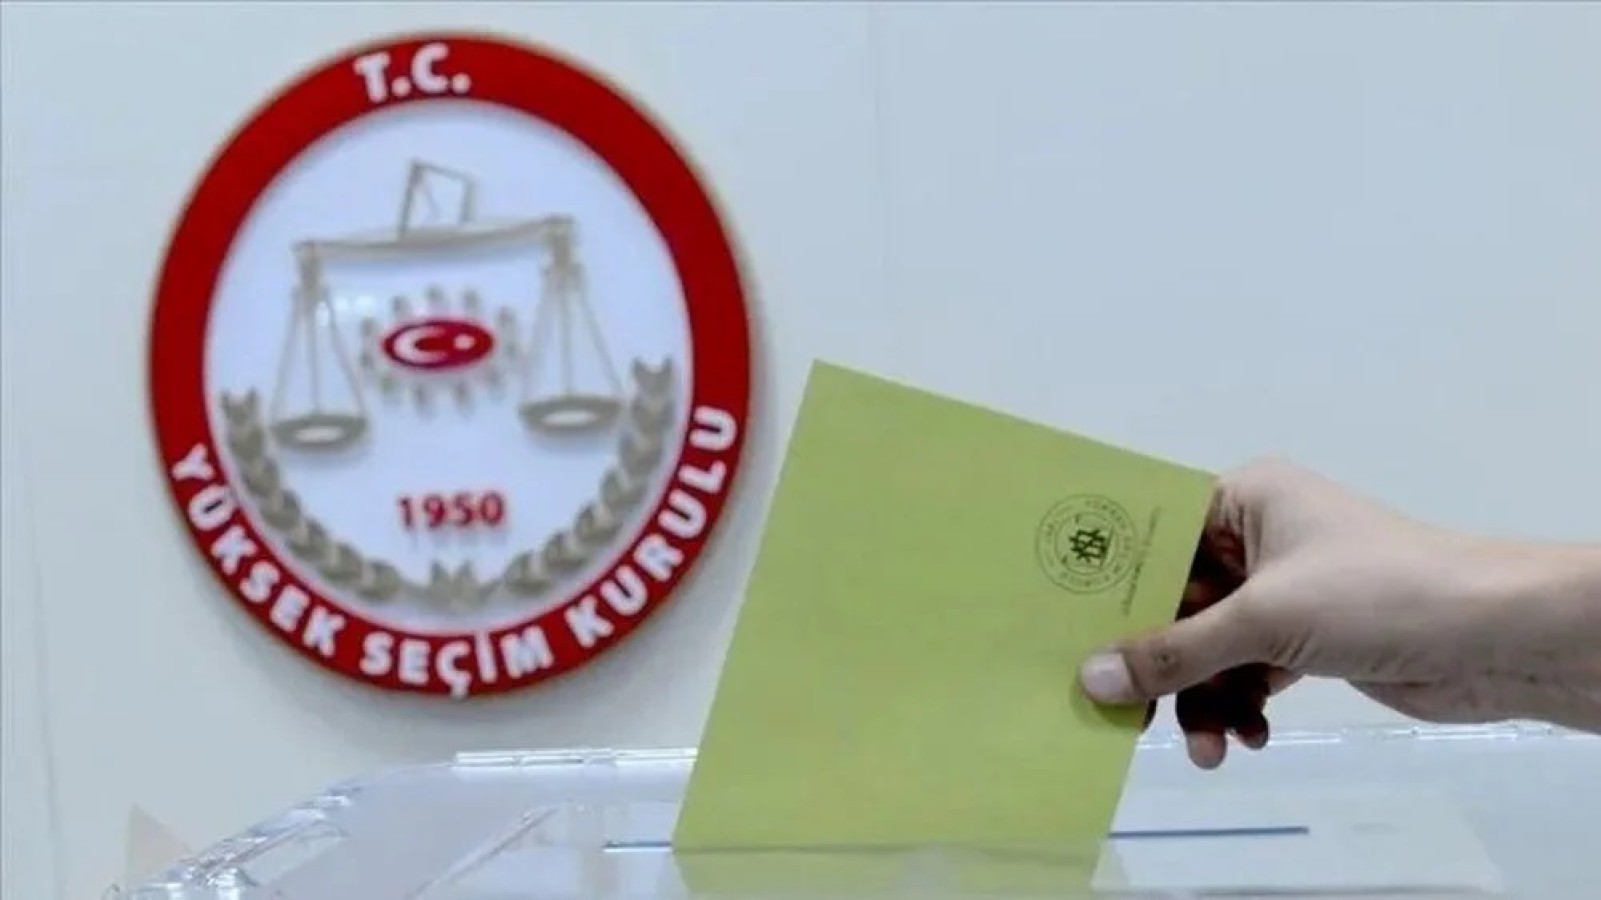 YSK seçimde oy kullanma rehberi yayımladı;